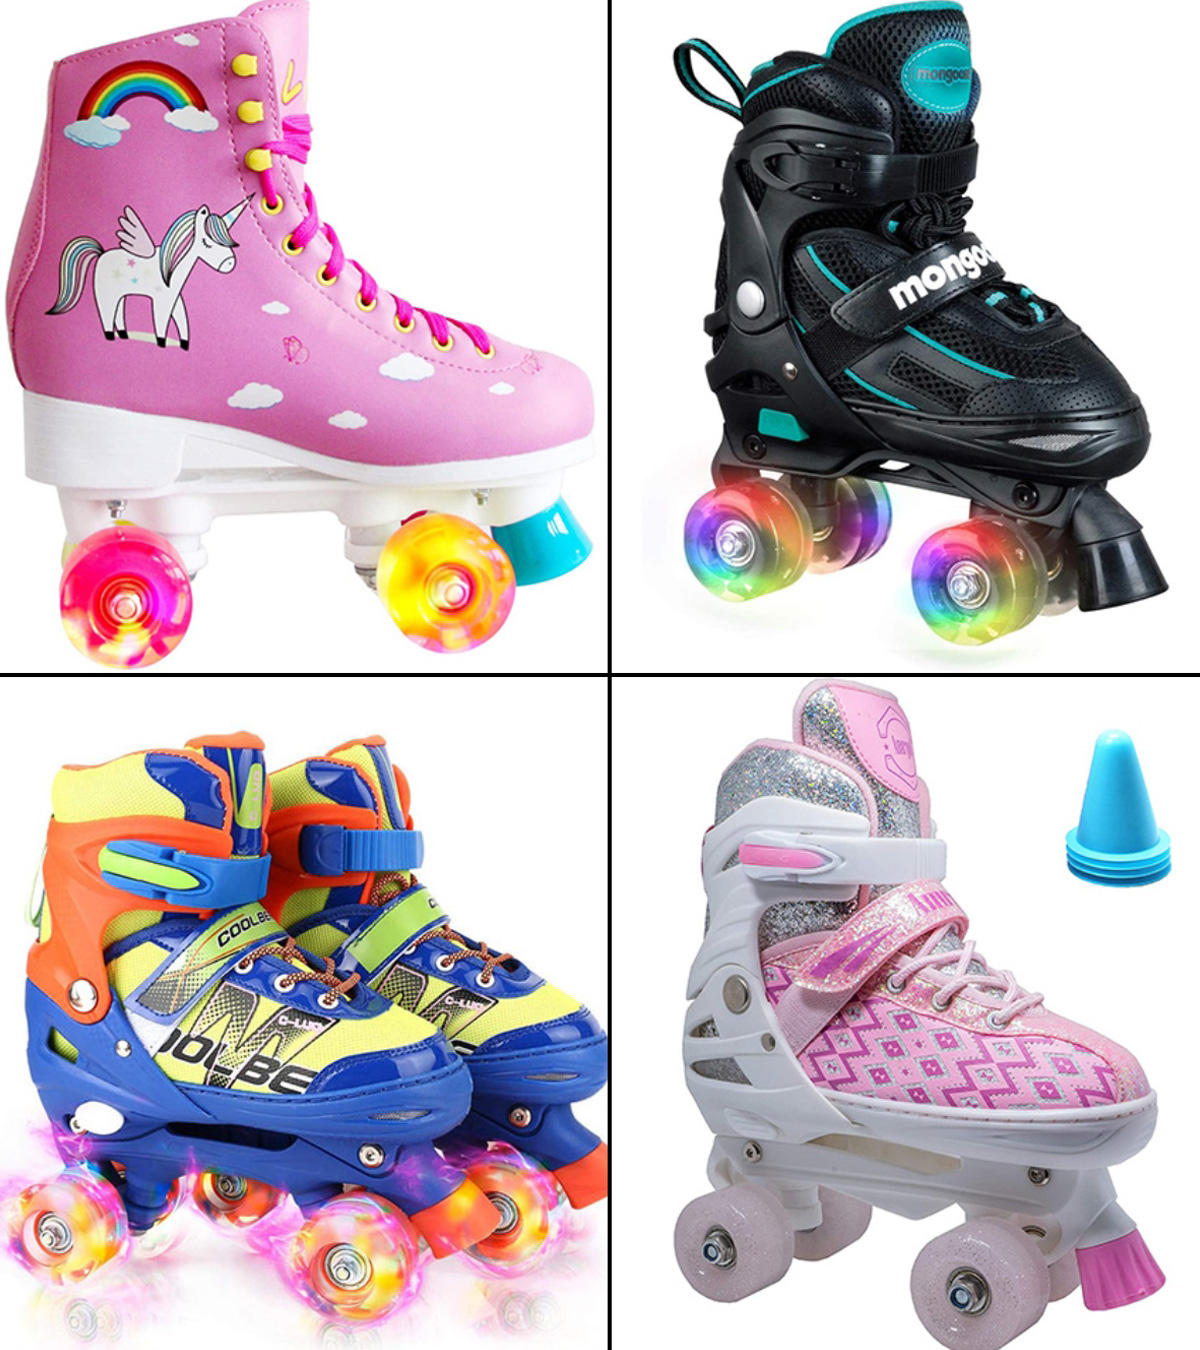 Best roller skates for kids